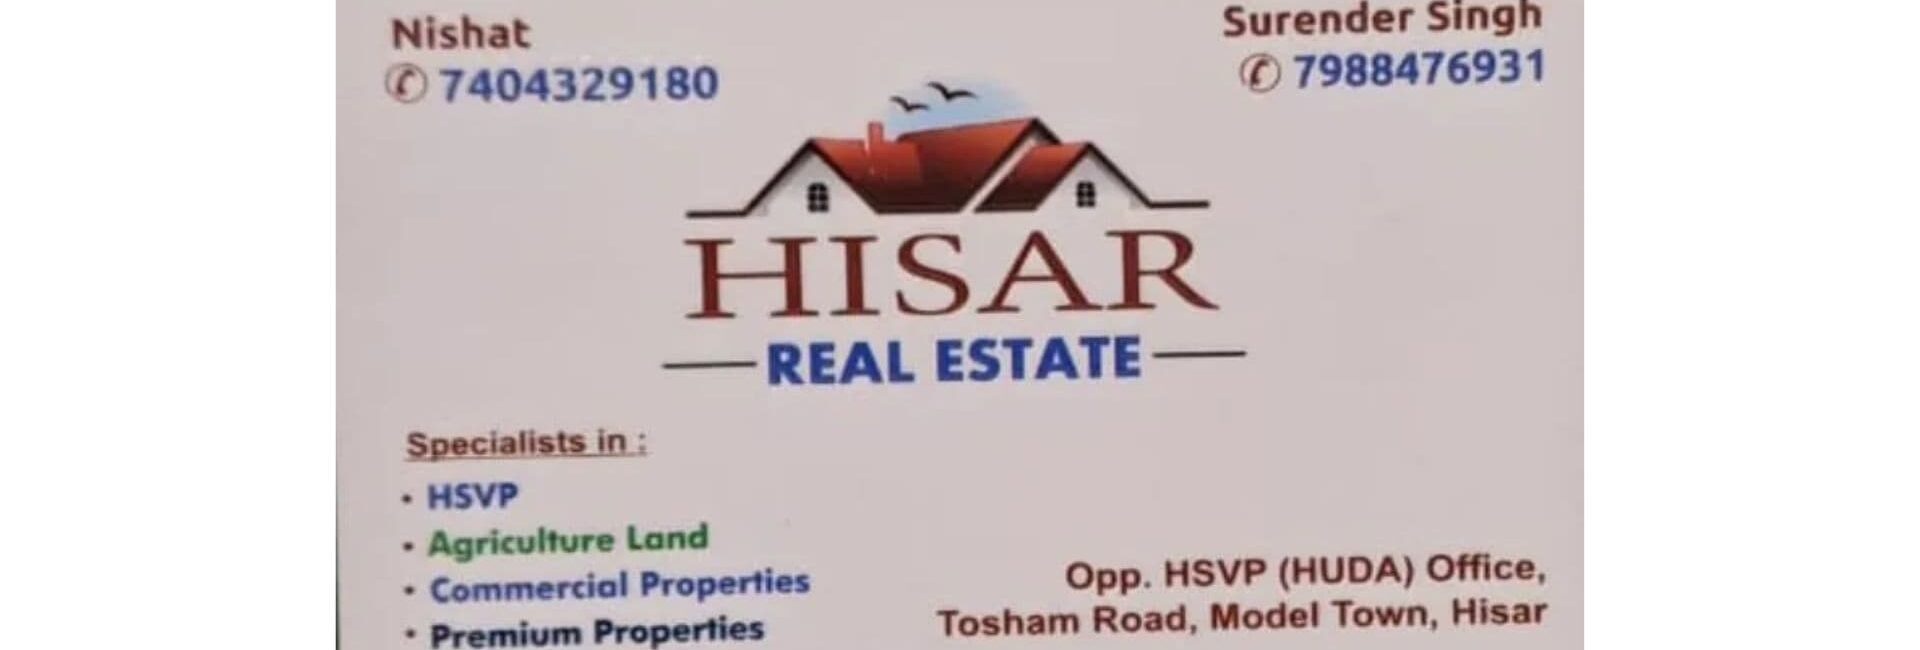 Hisar Real Estate - Property Dealer in Hisar ModelTown